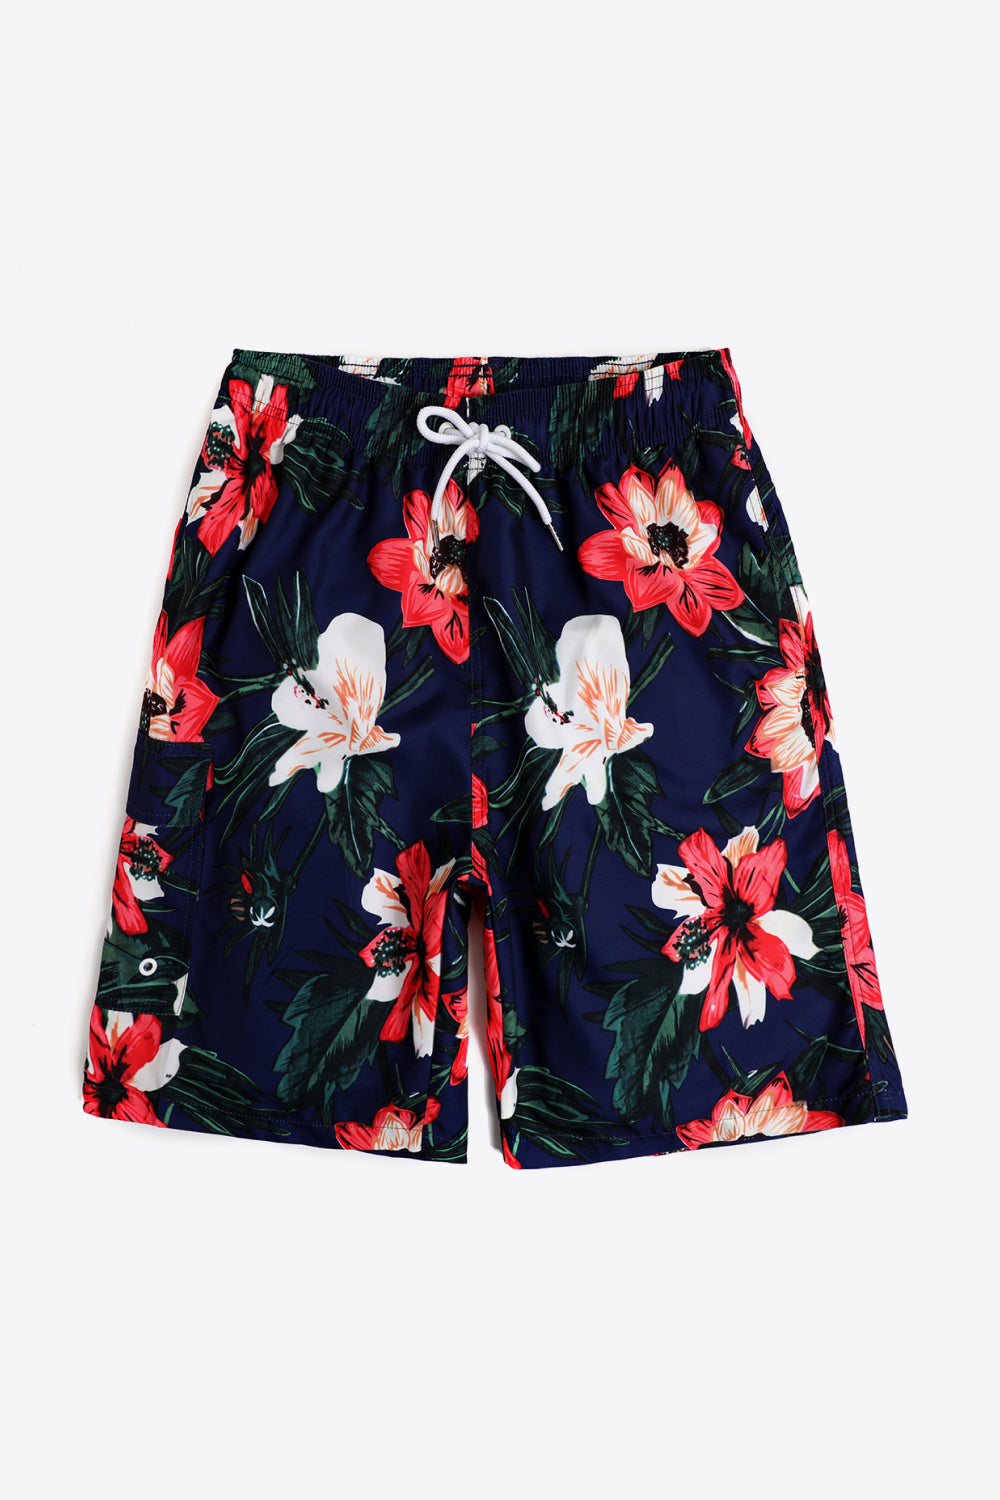 full-size-floral-drawstring-waist-swim-trunks